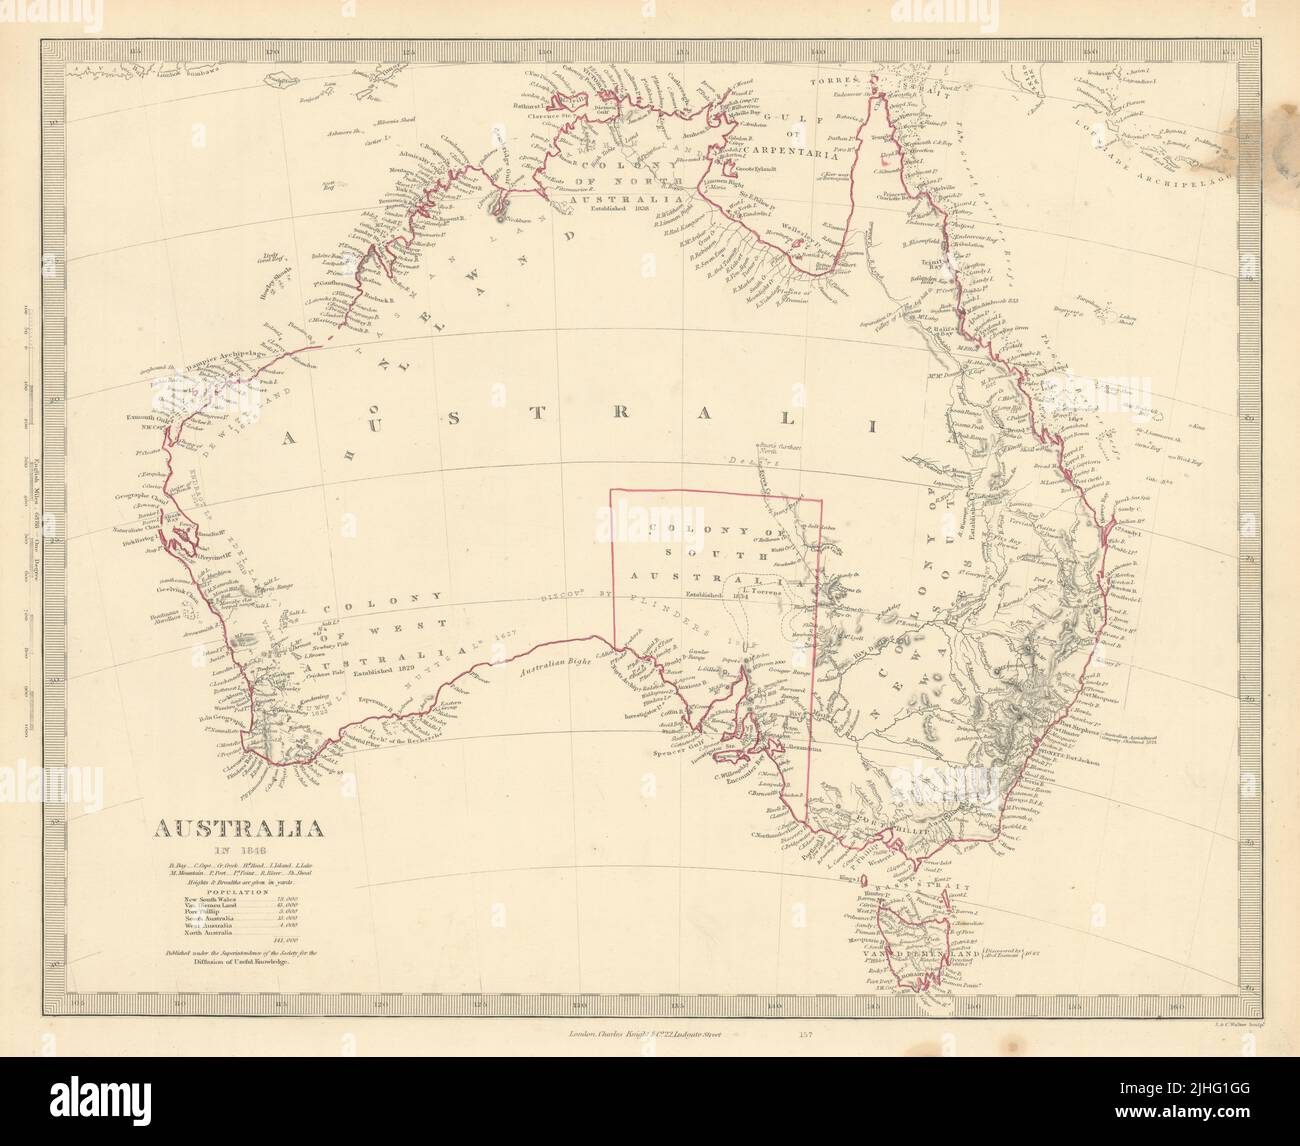 AUSTRALIA EN 1846. Muestra las fechas de establecimiento de colonias. Población. Mapa SDUK 1851 Foto de stock